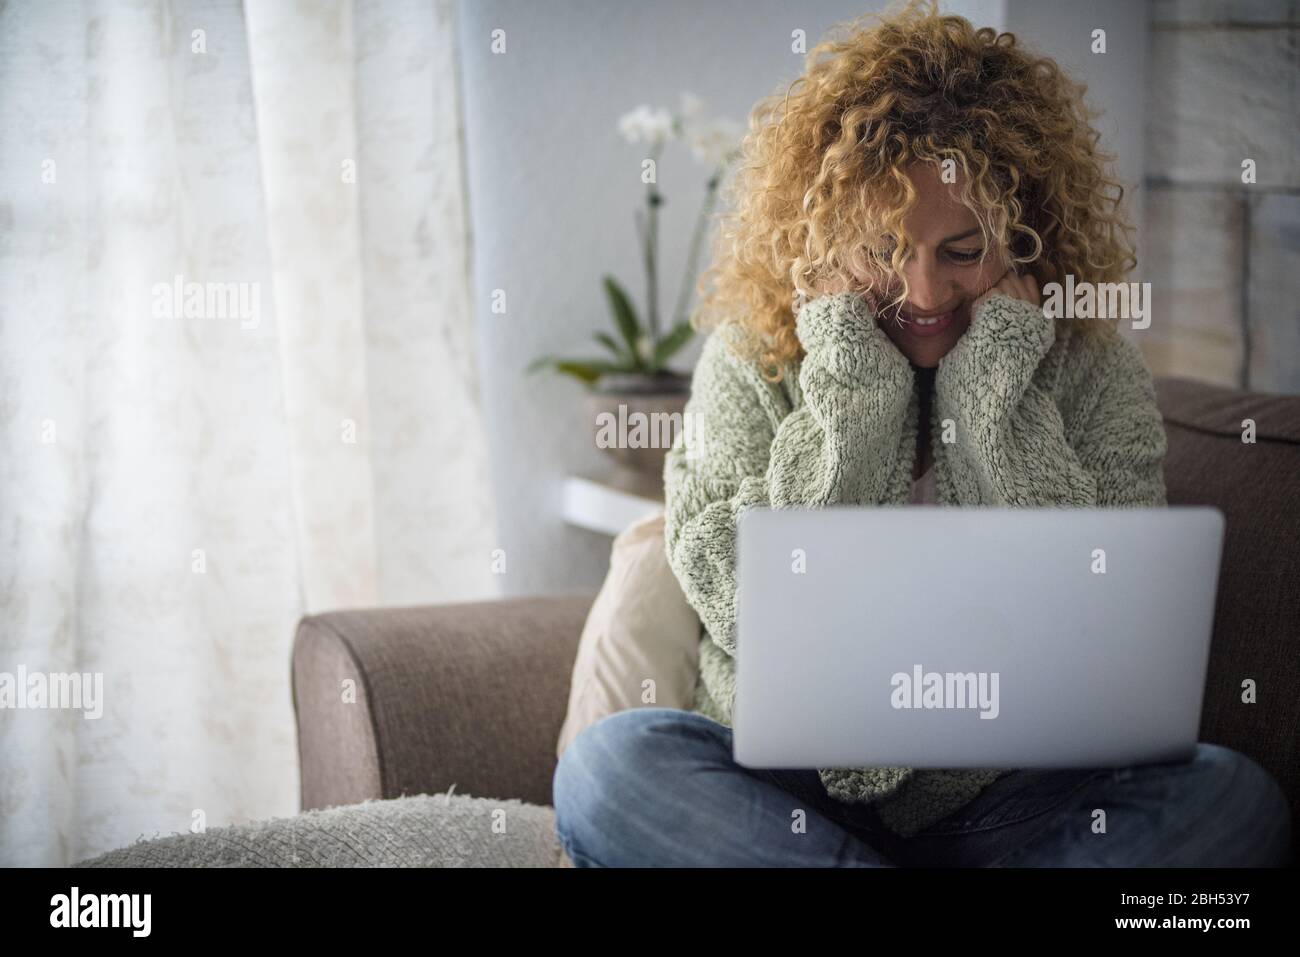 Lächelnde Frau, die mit einem Laptop auf dem Sofa arbeitet Stockfoto